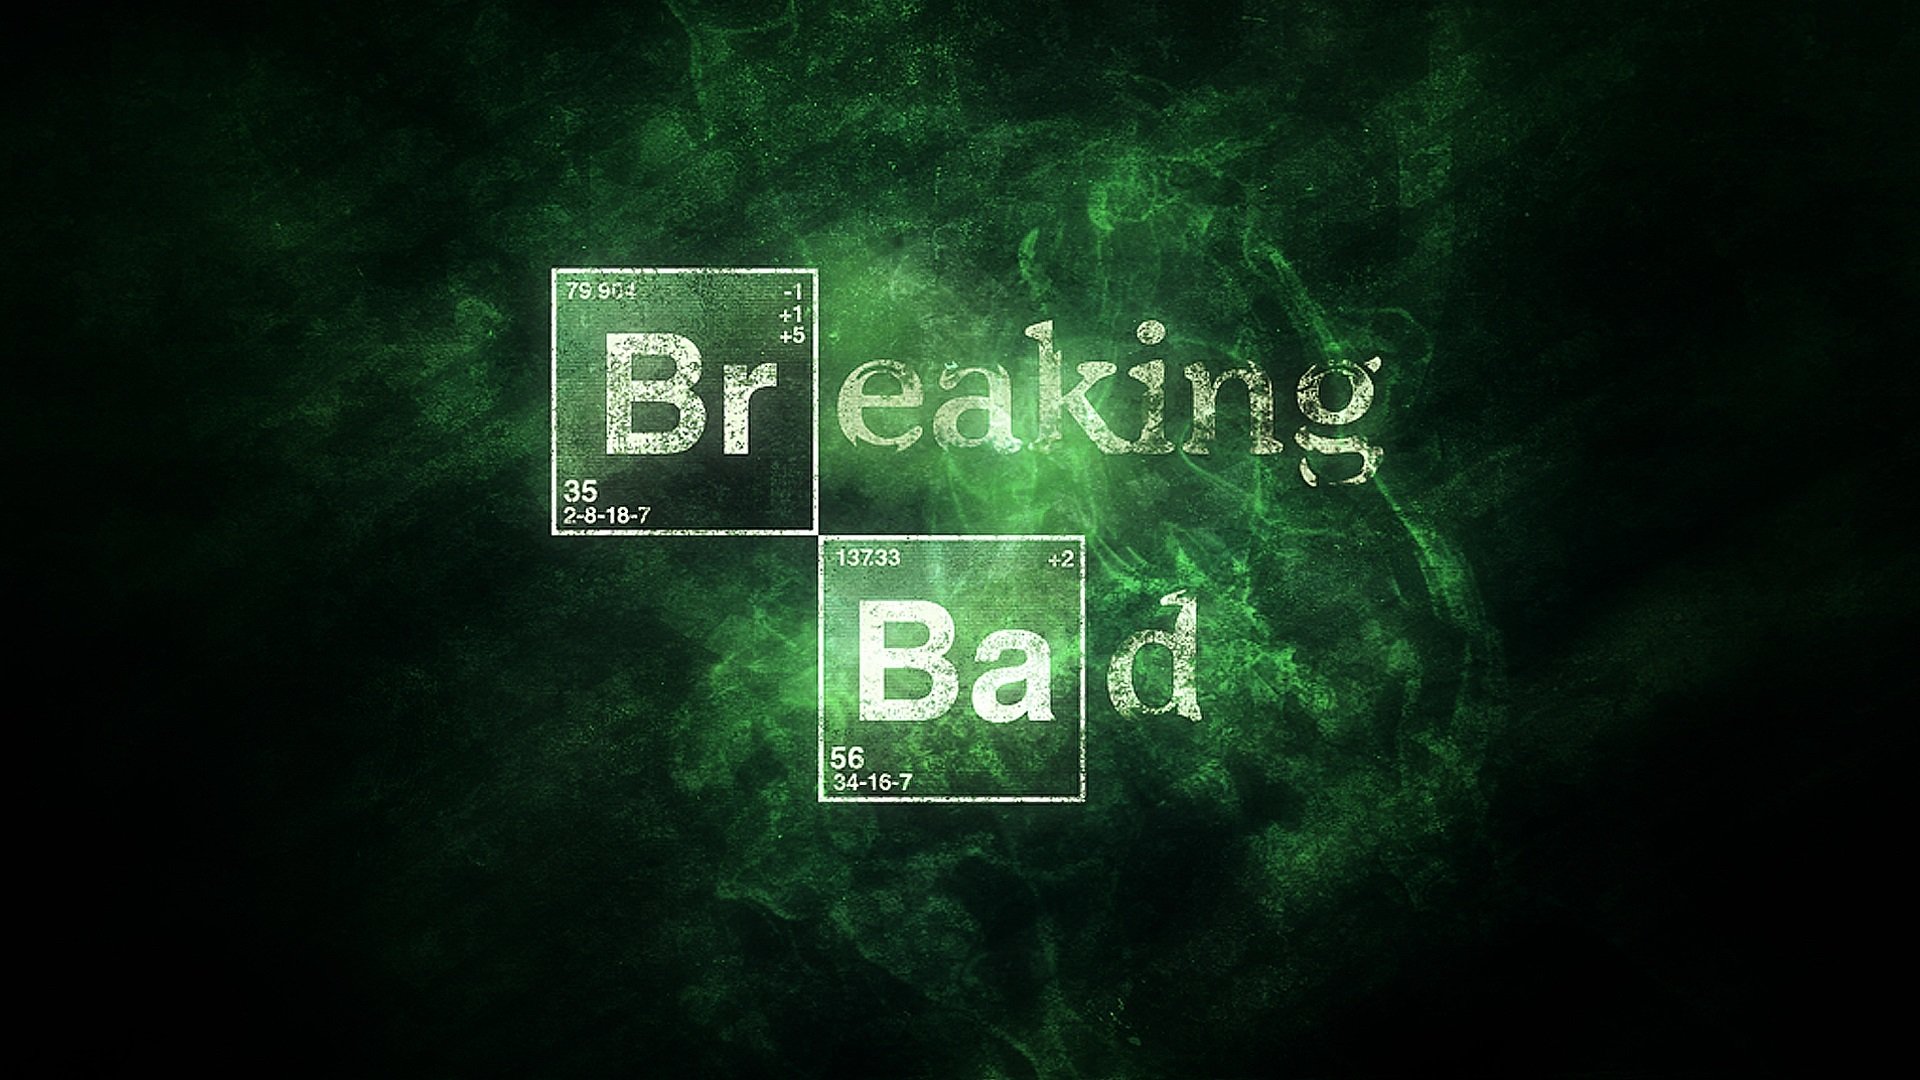 HD wallpaper Breaking Bad logo meth communication text western script   Wallpaper Flare